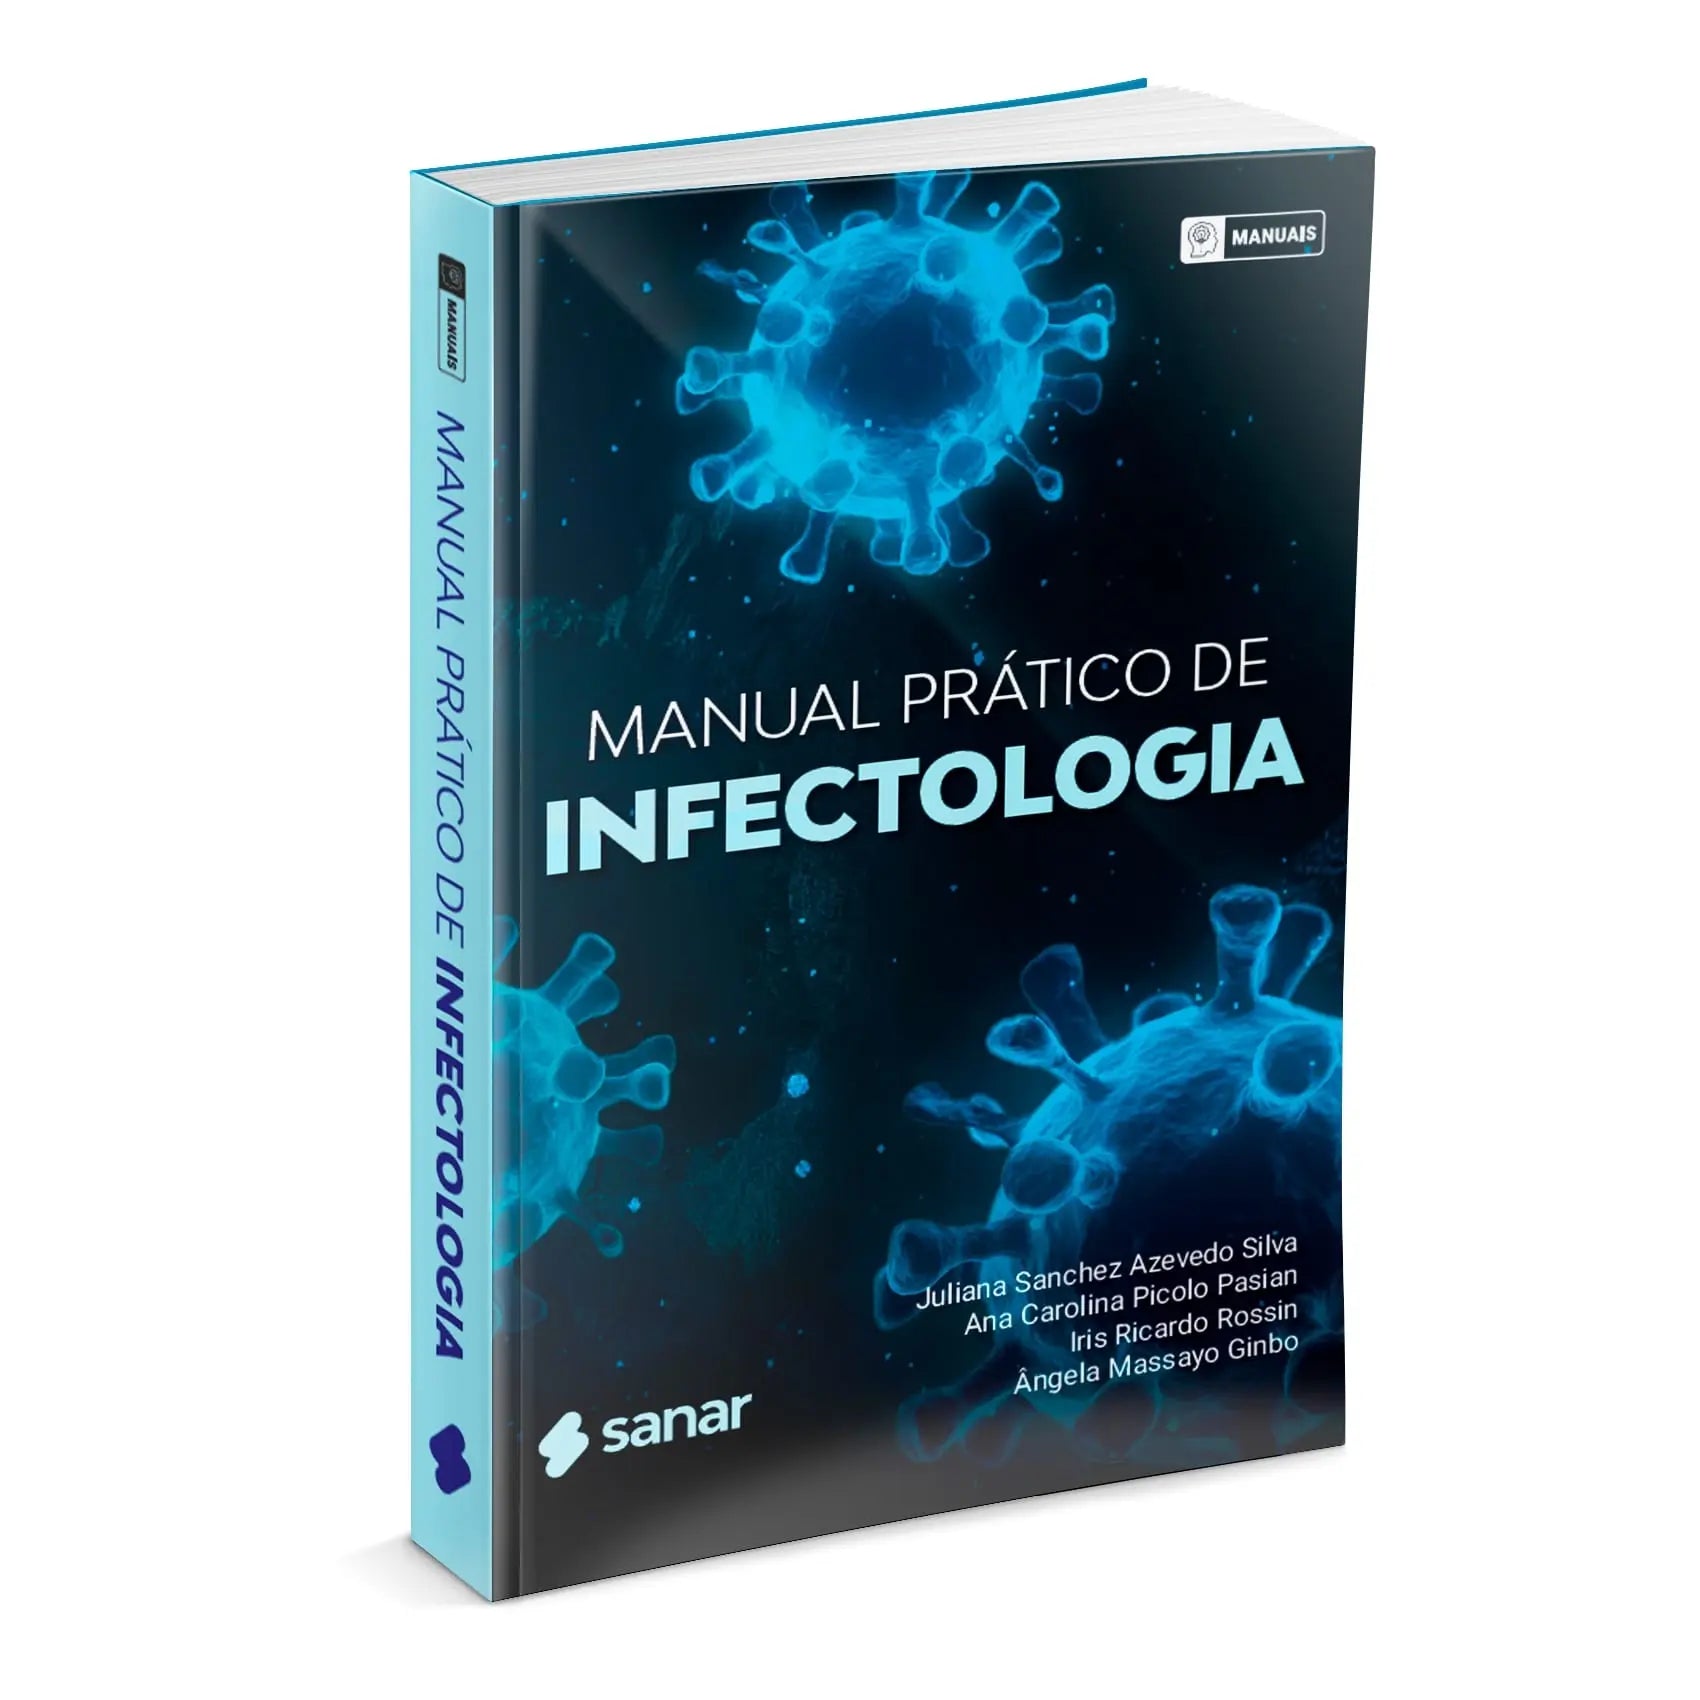 Imagem do livro Manual Prático de Infectologia